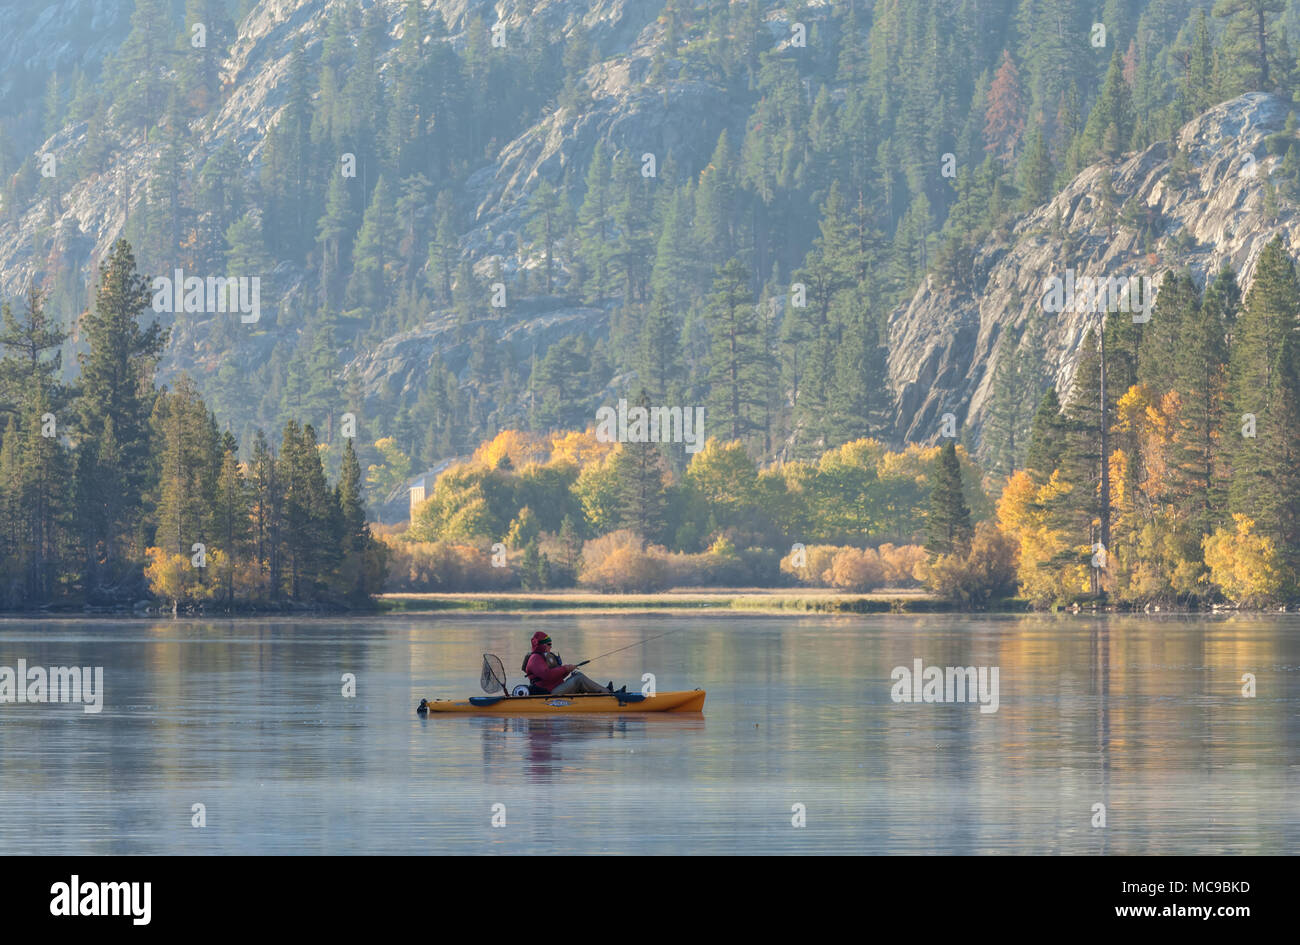 Ein Fischer war Kanu im silbernen See auf einem frühen Herbstmorgen, Juni Lake Loop, Juni Lake, Kalifornien, Vereinigte Staaten. Stockfoto